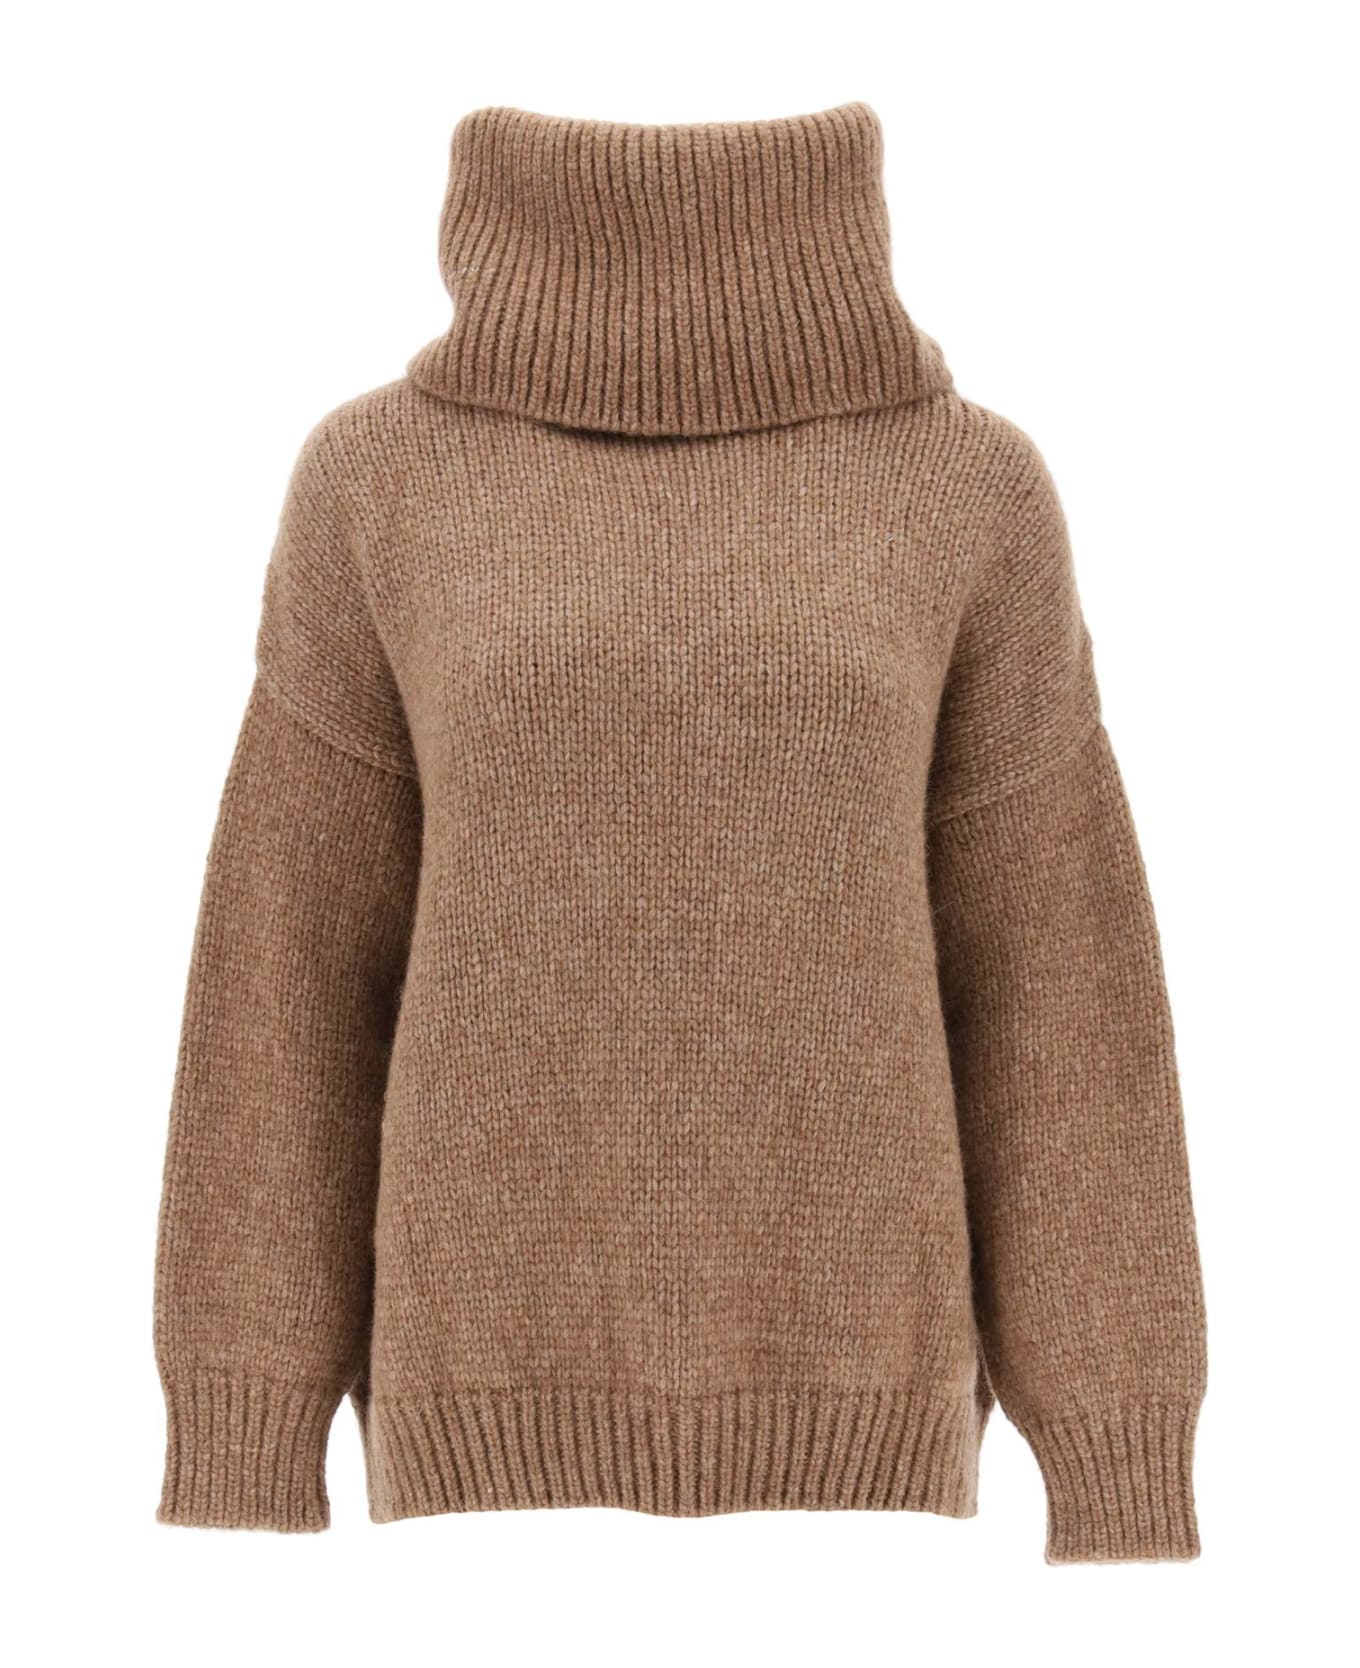 Dolce & Gabbana Llama Sweater - MARRONE 2 (Brown)